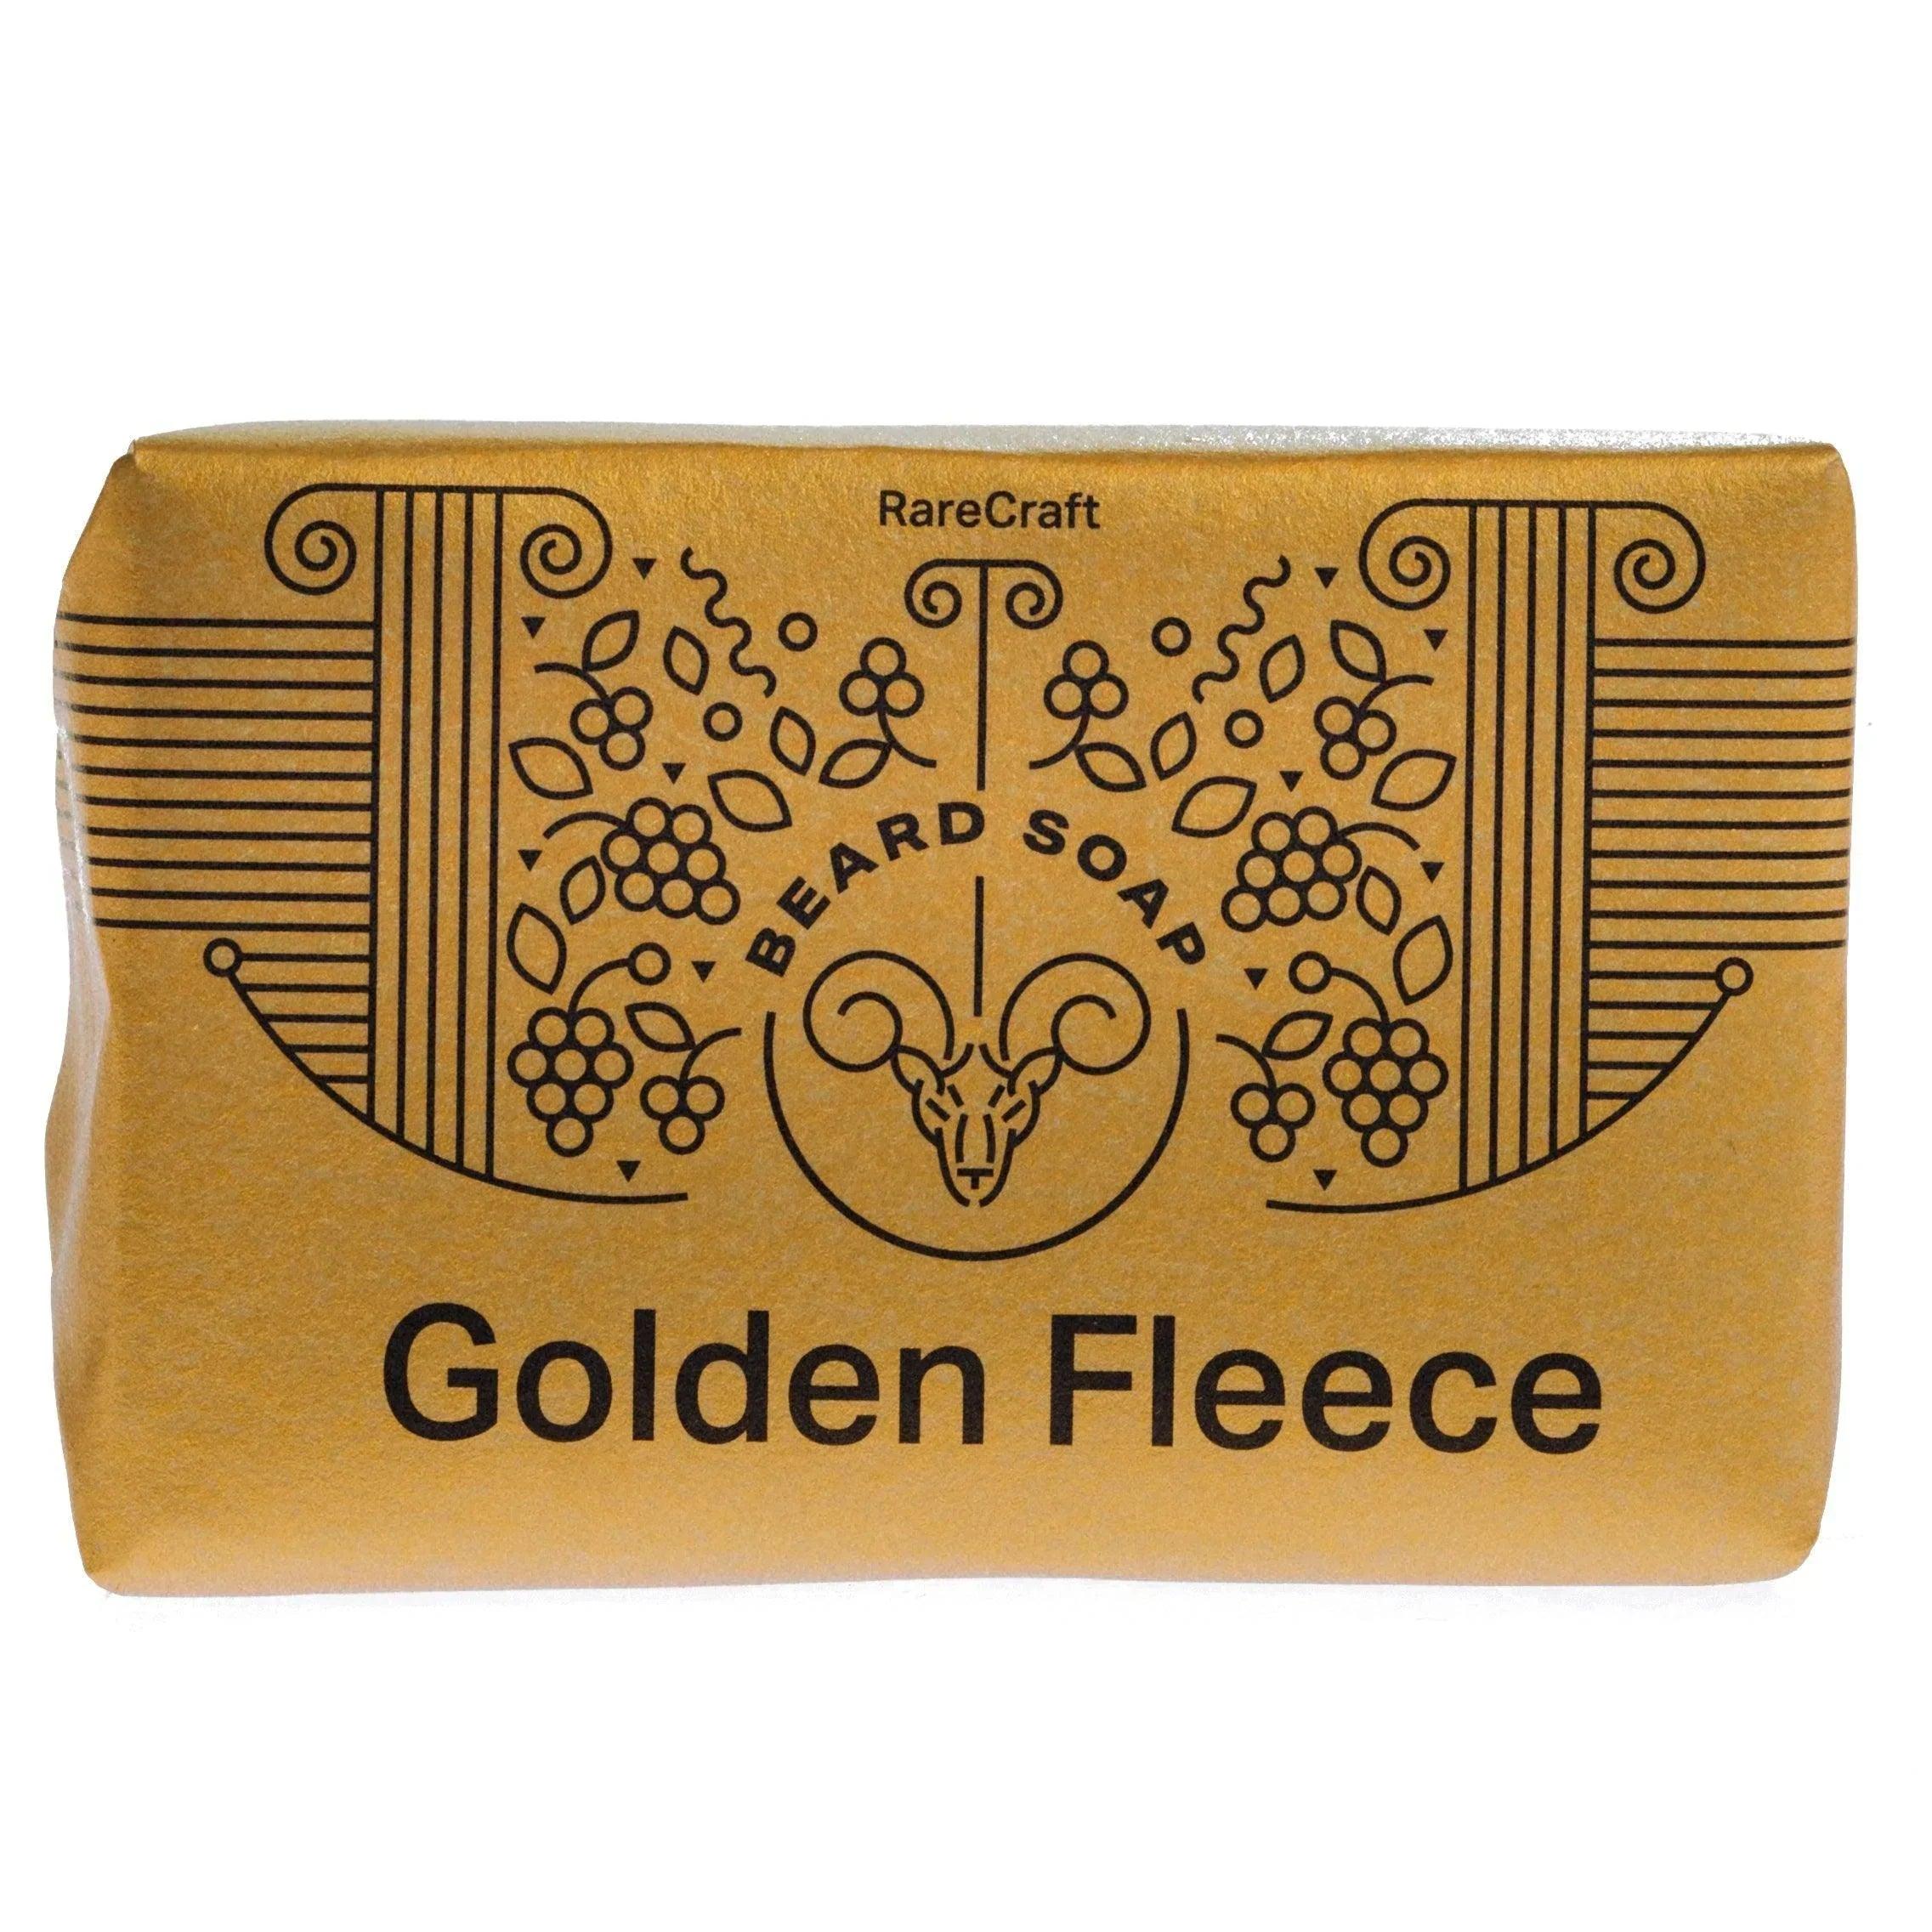 Golden Fleece Rarecraft Skjeggsåpe | Skjeggsåpe | RareCraft | JK SHOP | JK Barber og herre frisør | Lavepriser | Best